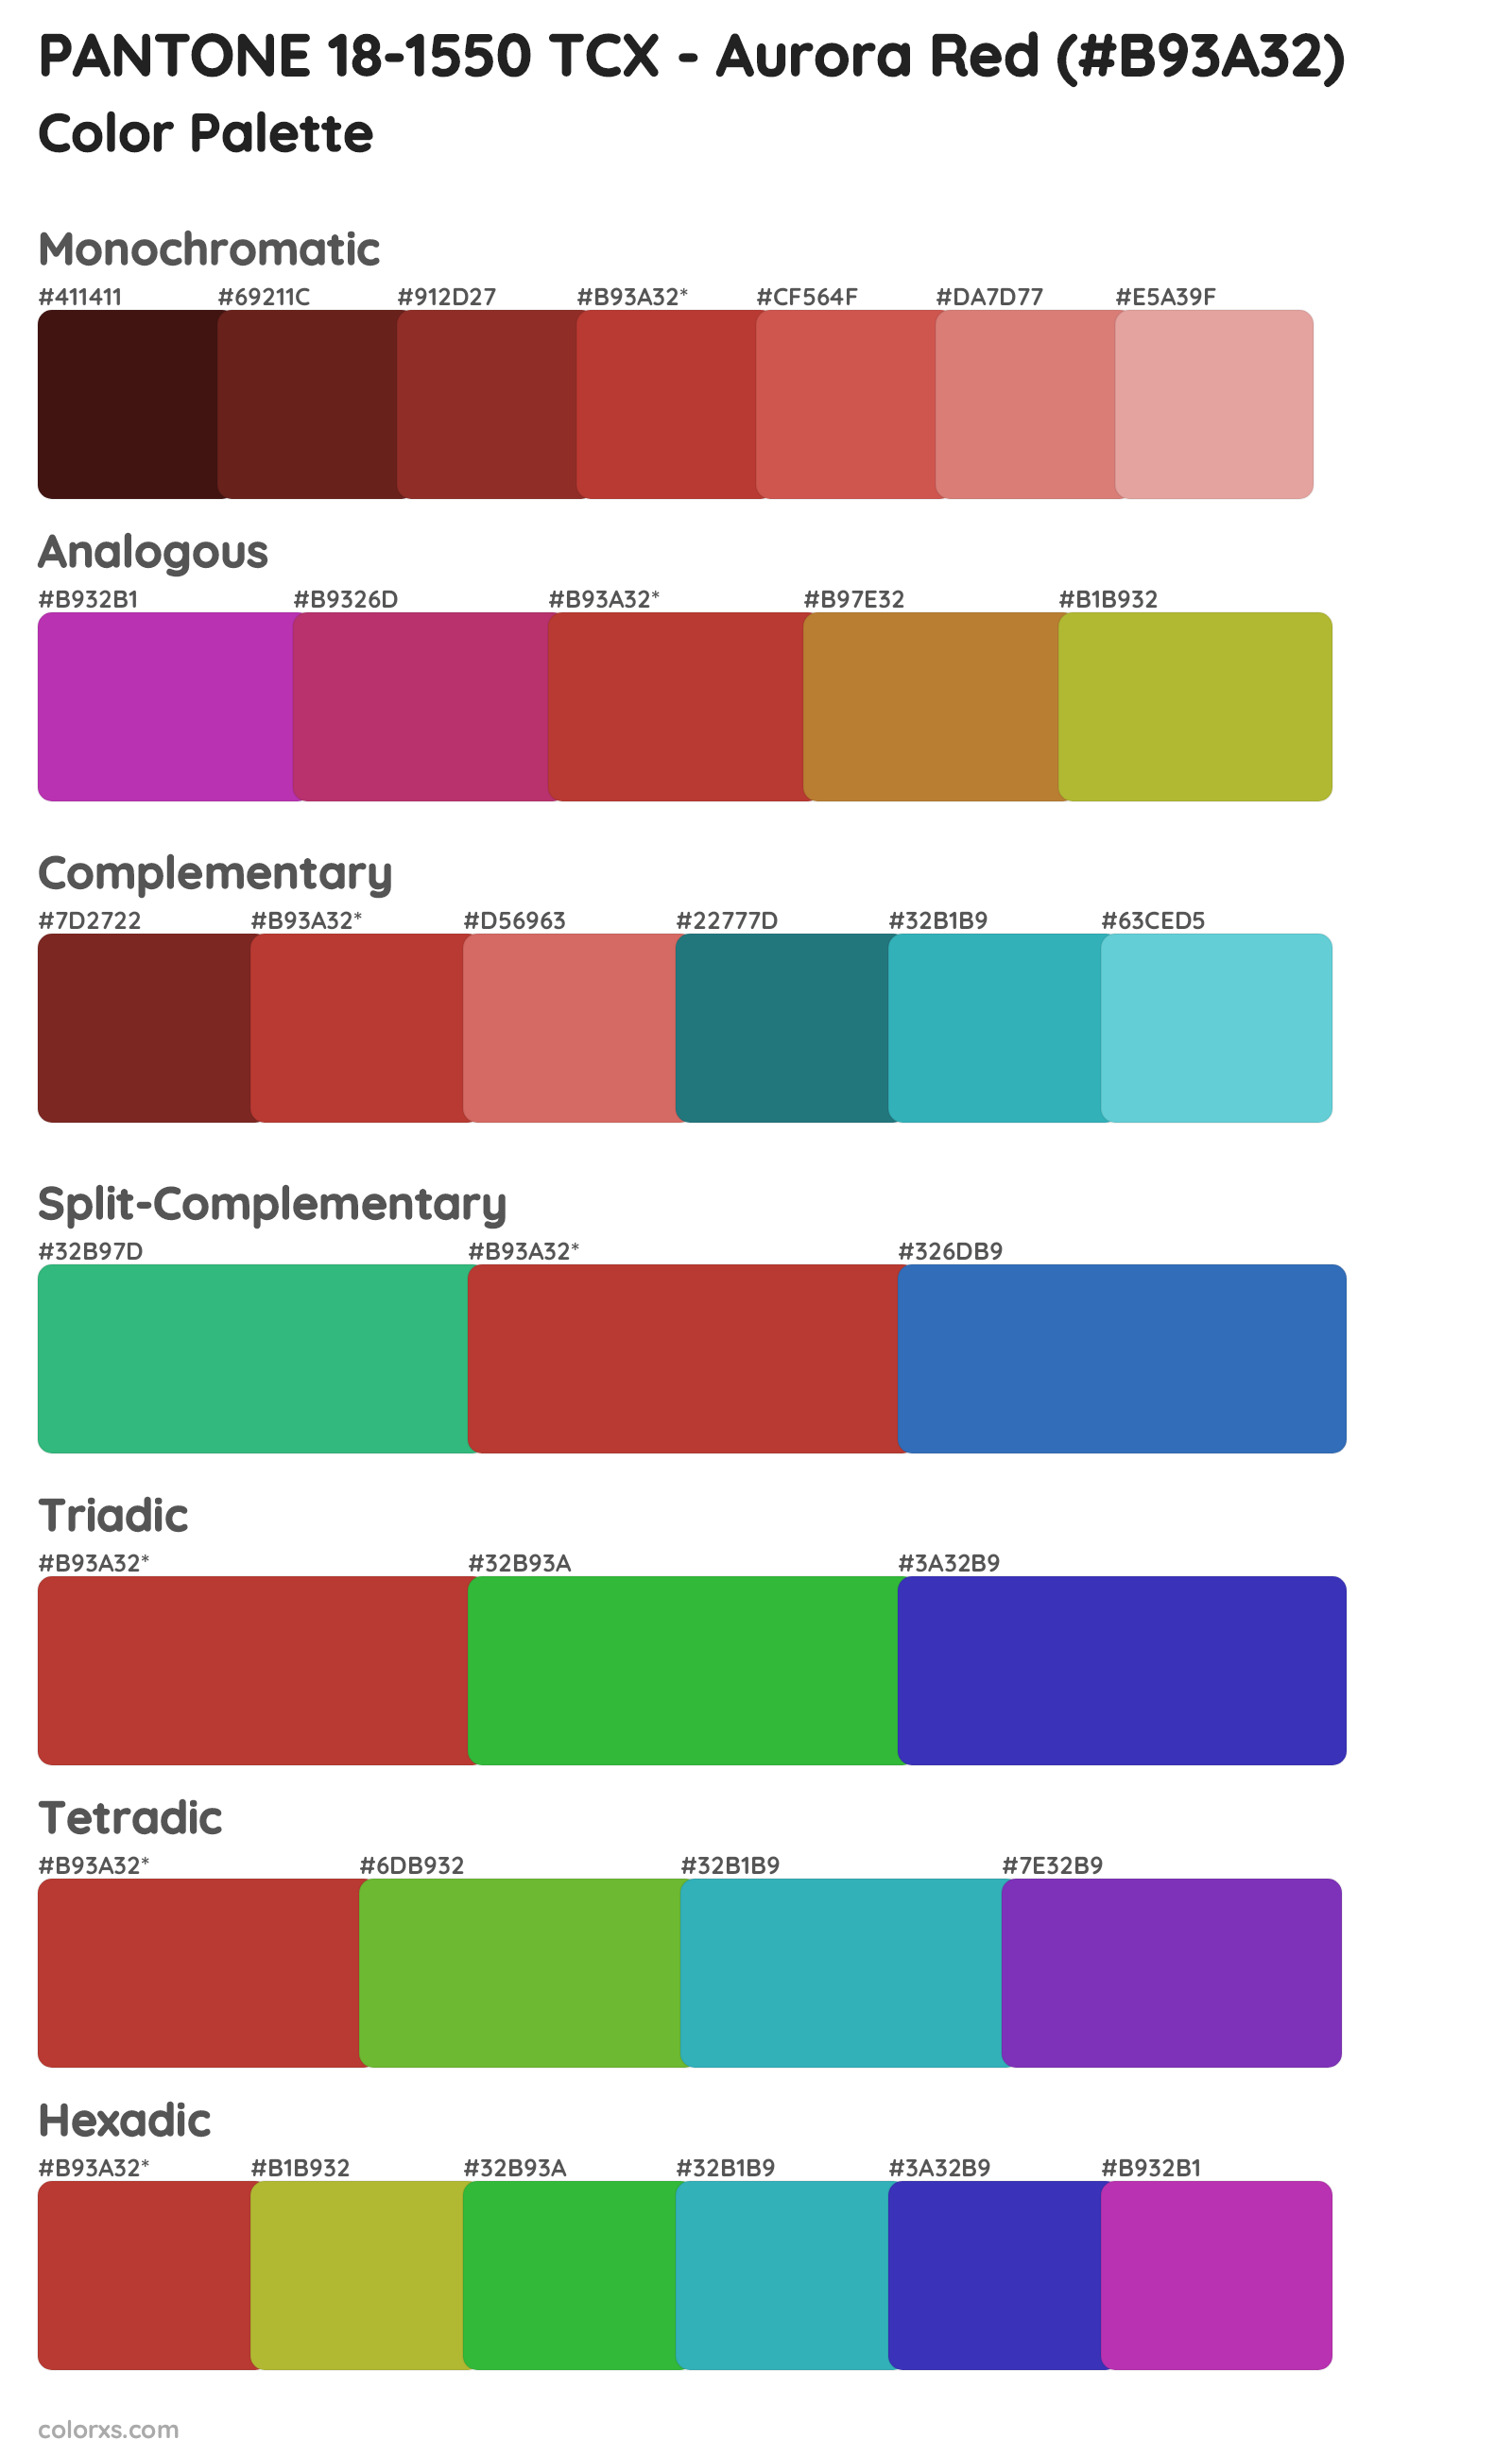 PANTONE 18-1550 TCX - Aurora Red Color Scheme Palettes